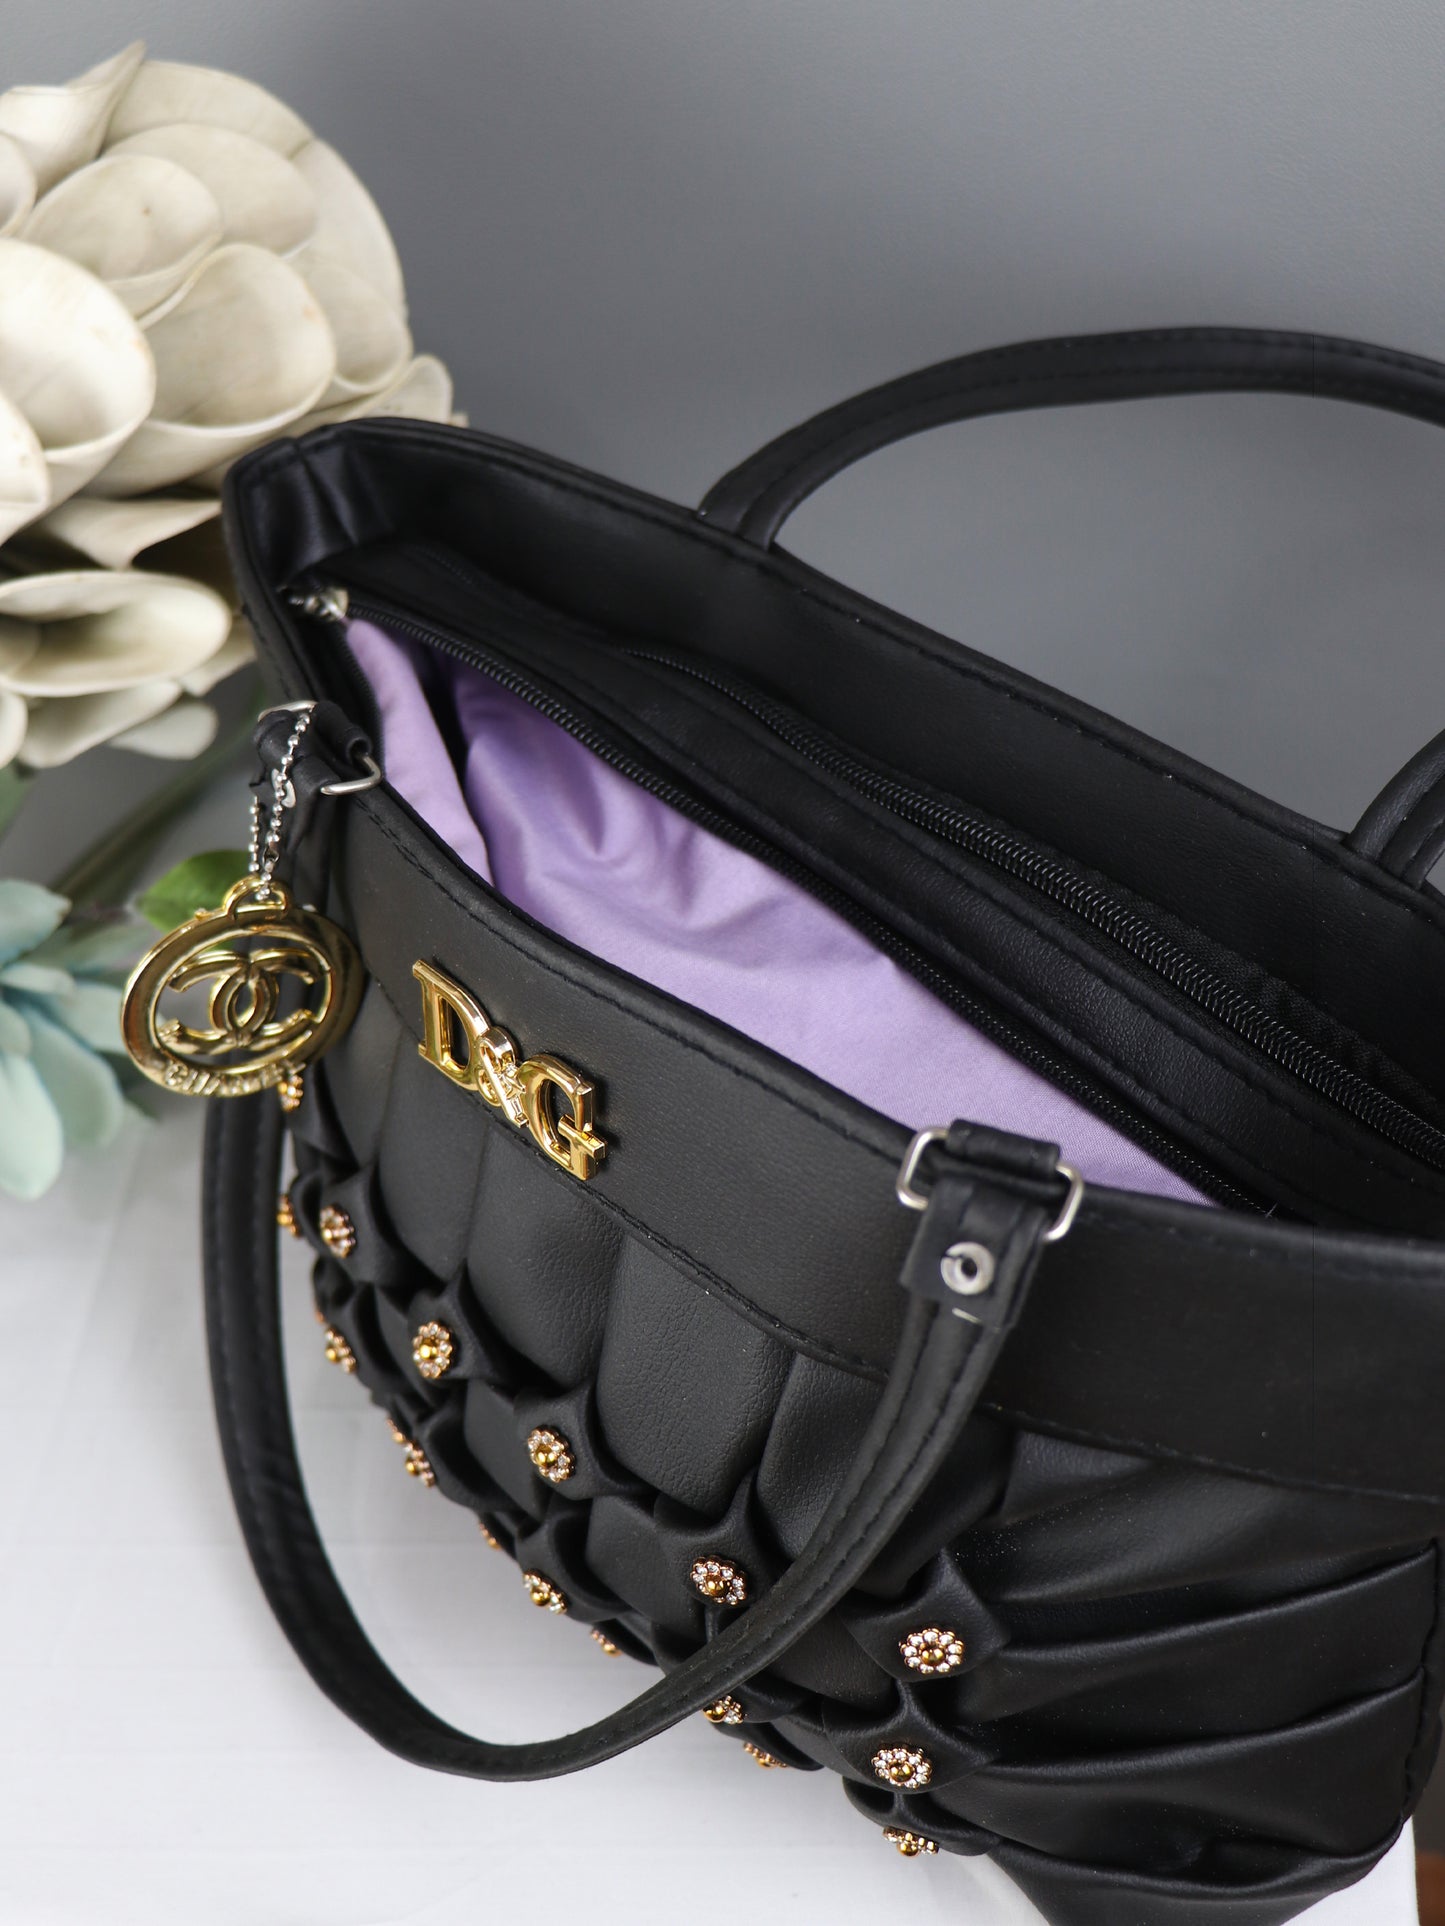 Women's DG Handbag Black